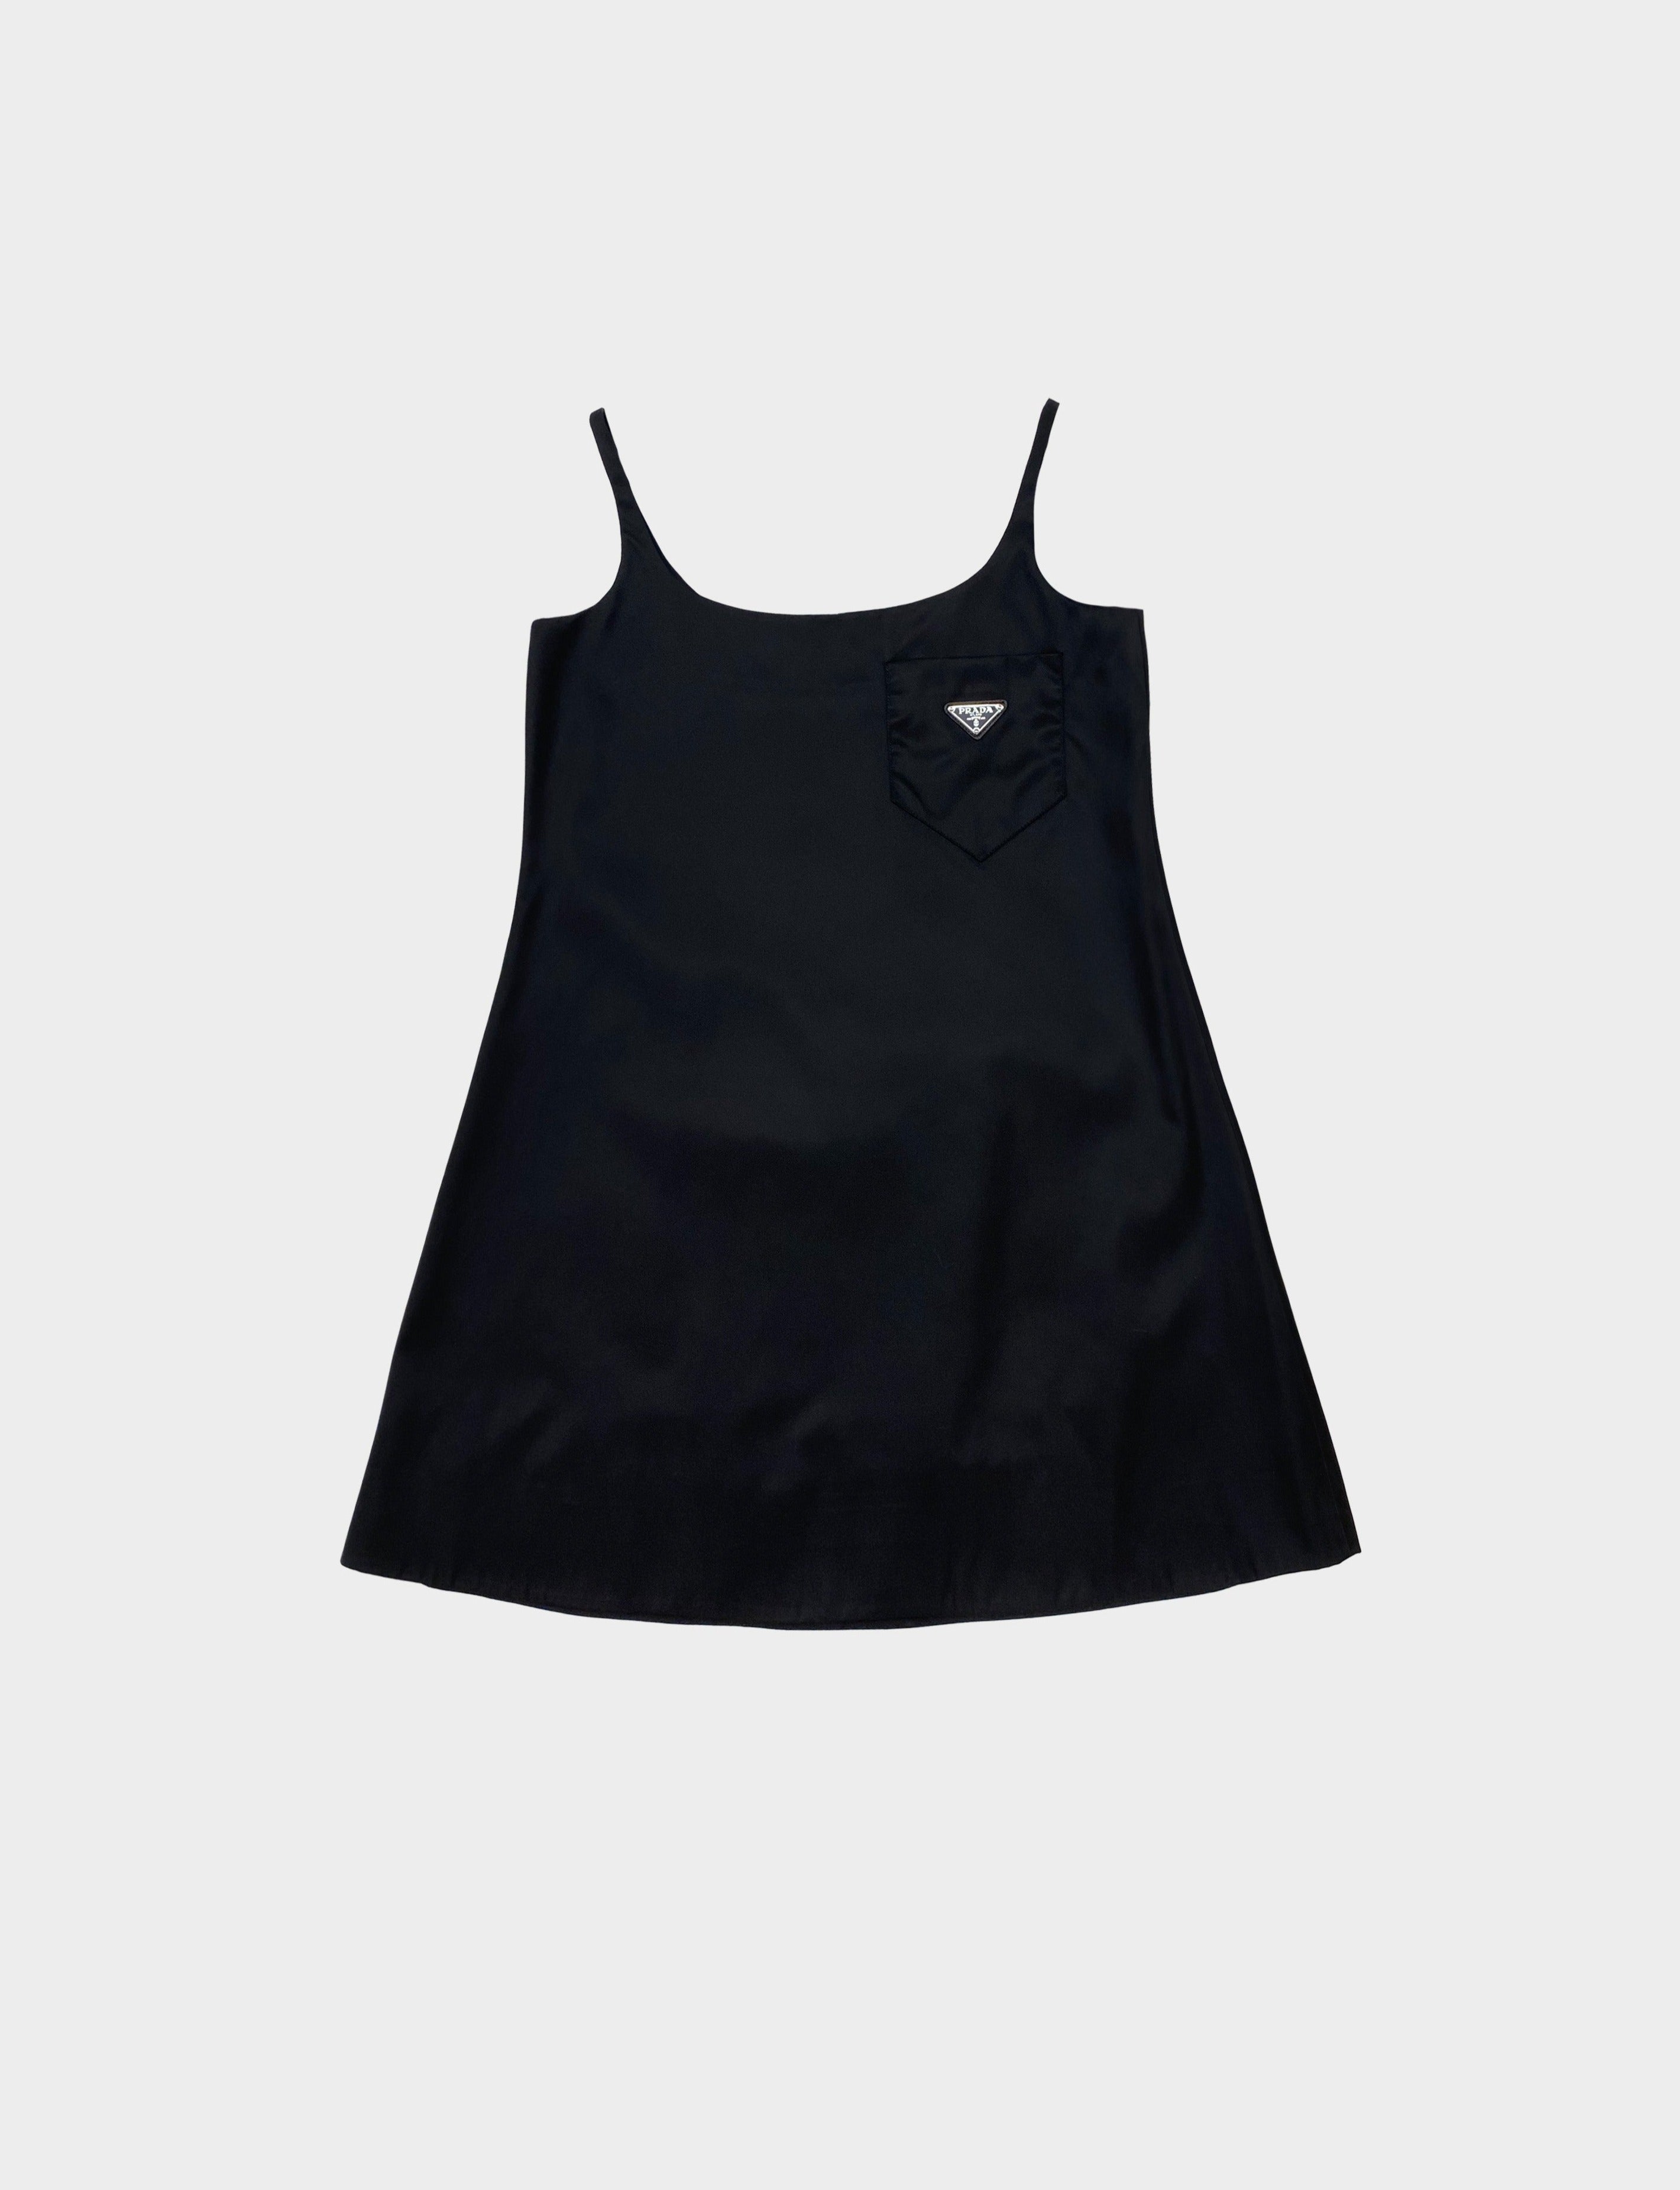 Prada Spring 2019 Black Nylon Babydoll Dress